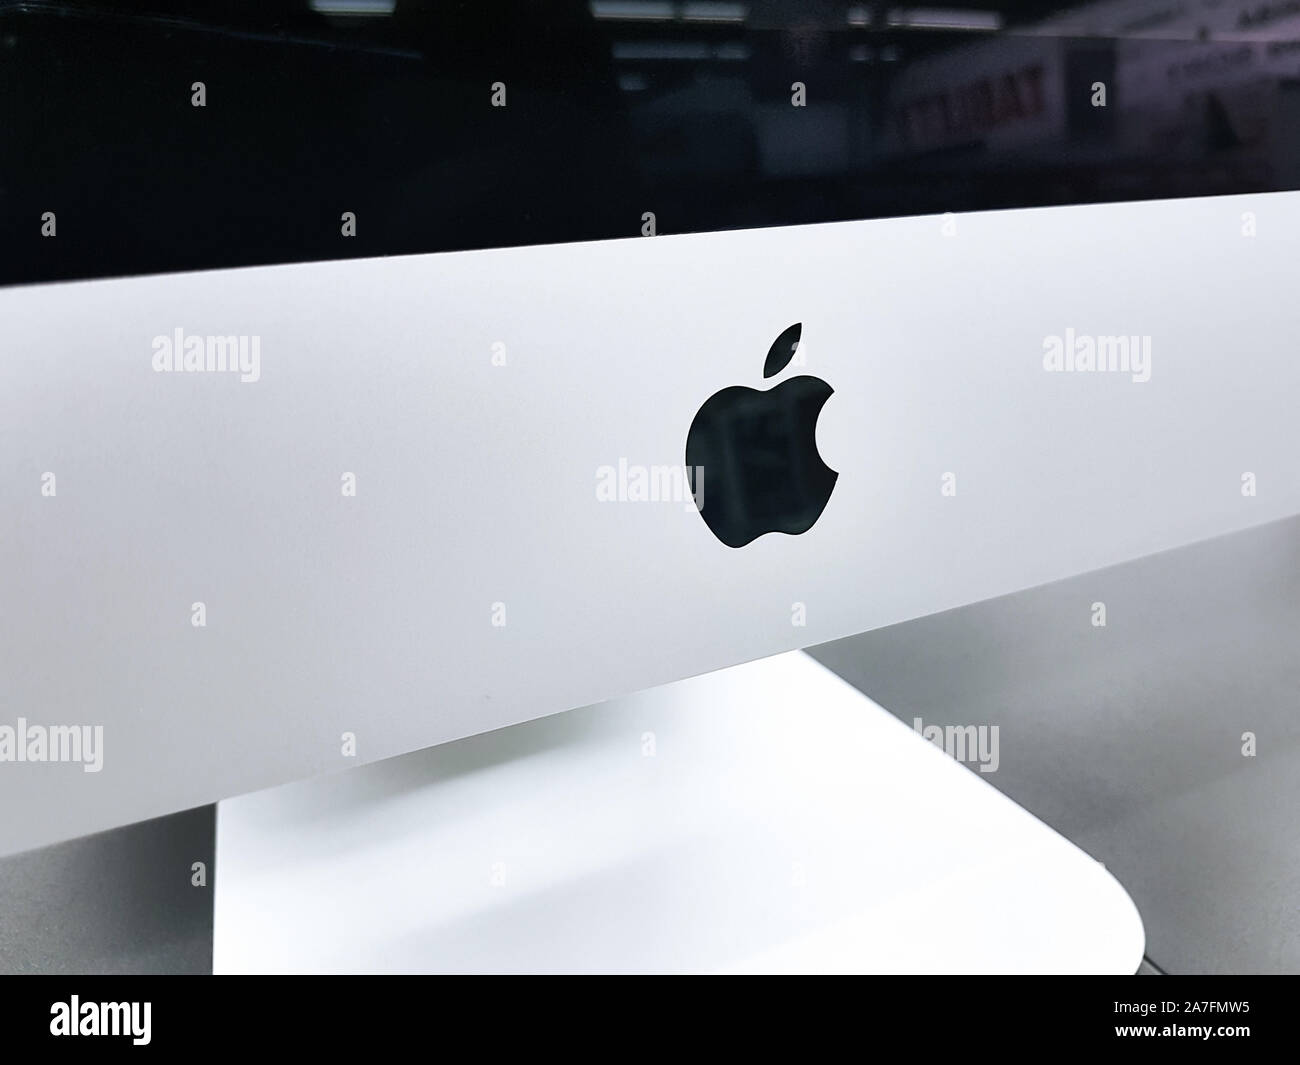 Tarnow, Polonia - 14 ottobre 2019:Close-up del logo Apple sul nuovo iMac Pro all-in-one personal computer nel computer Apple Store. Foto Stock